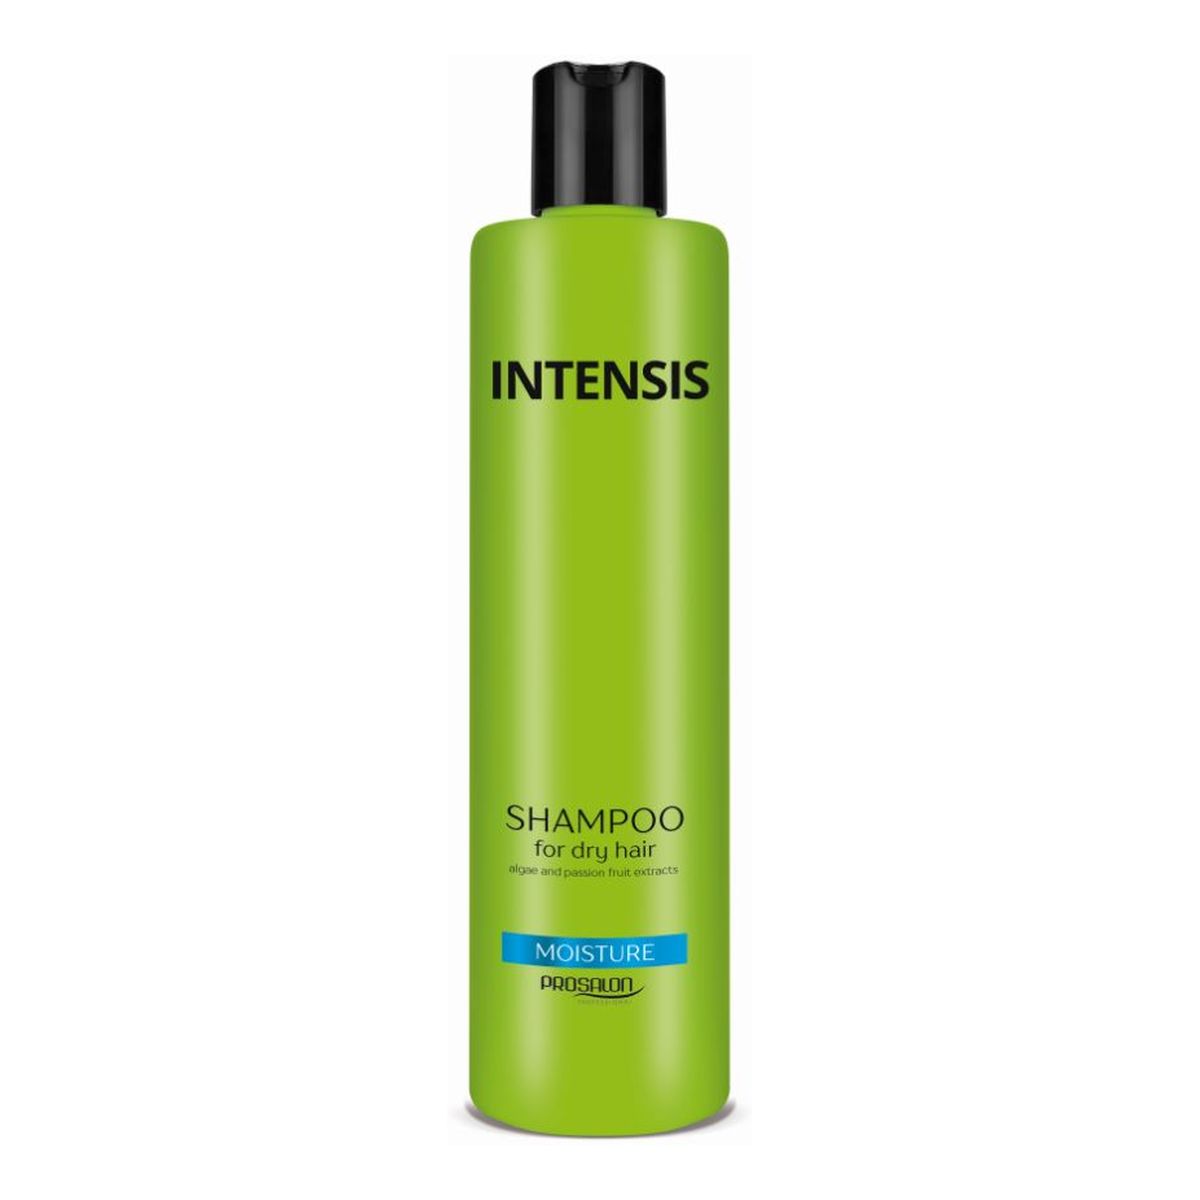 Chantal Profesional Prosalon szampon nawilżający do włosów suchych 1000g